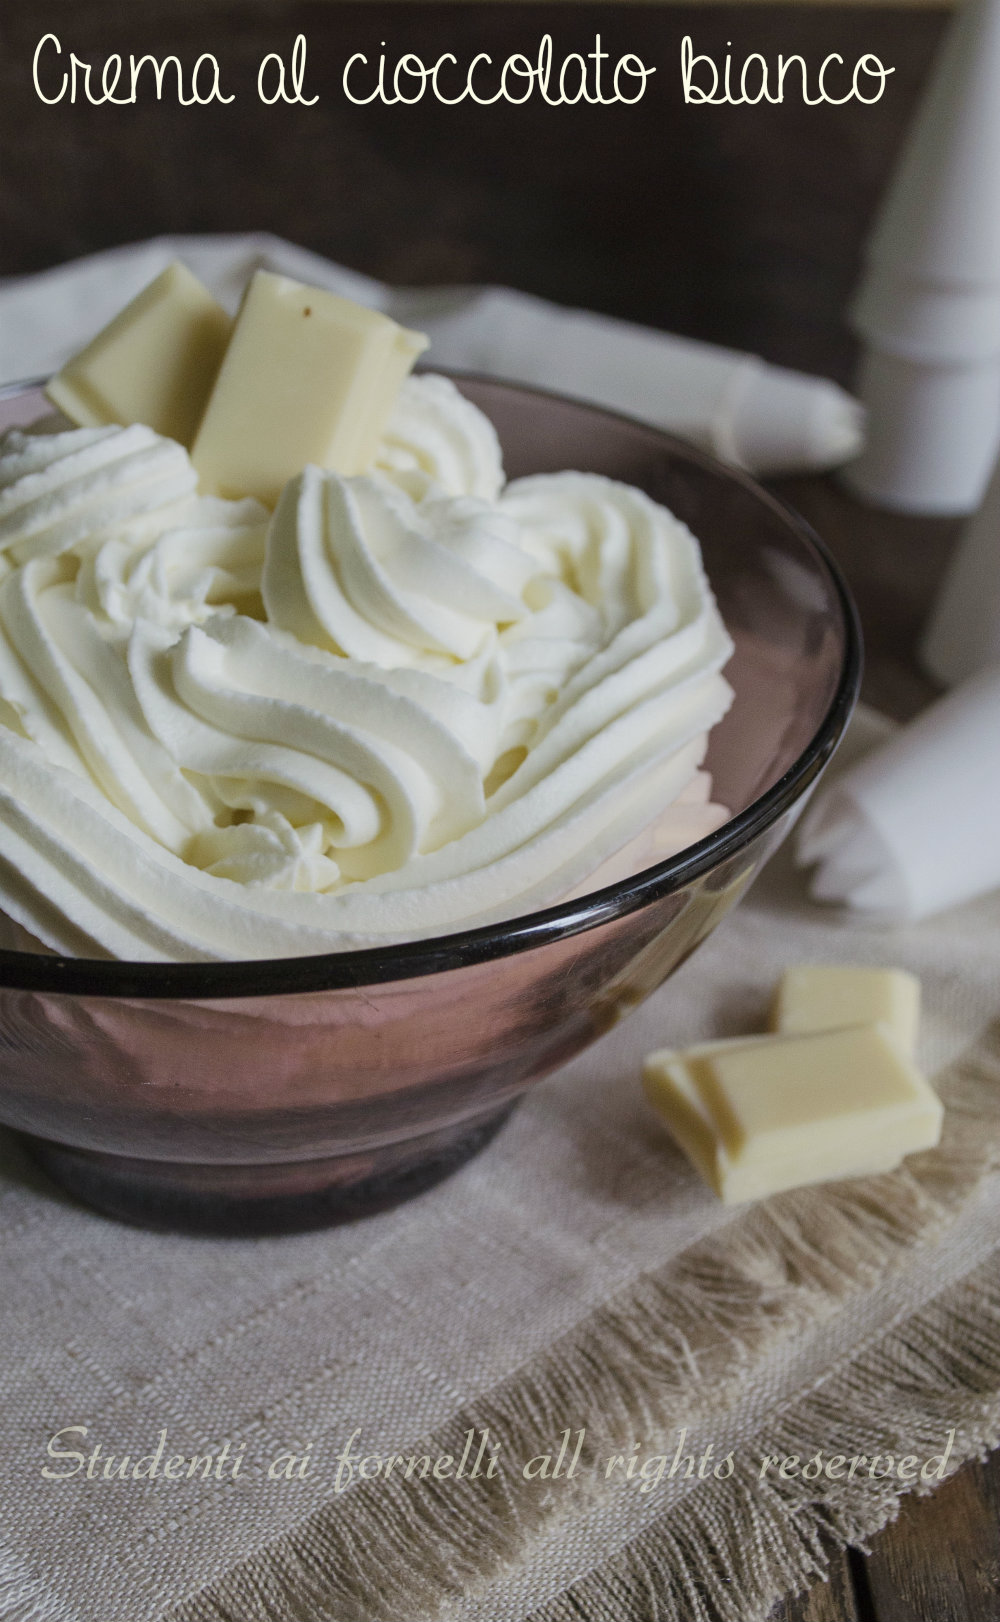 crema al cioccolato bianco e panna ricetta senza cottura uova latte burro per farcire torte crostate biscotti cialde